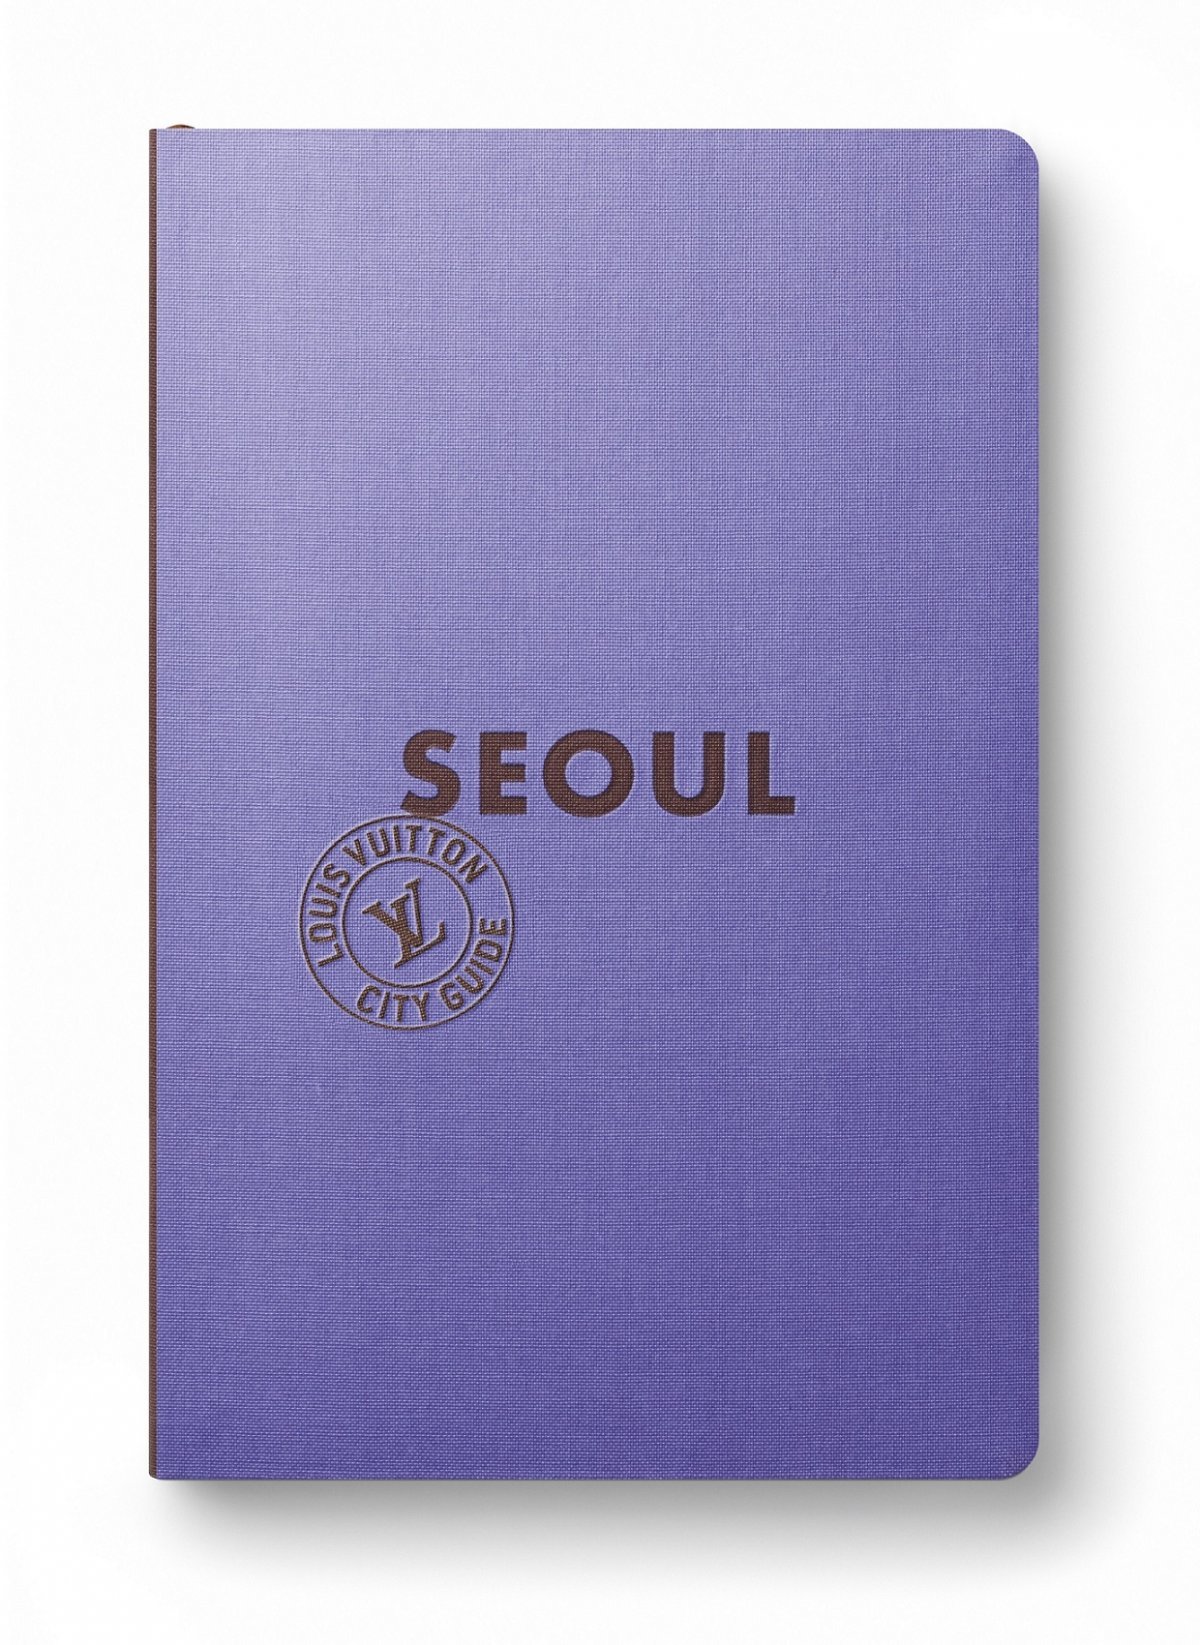 박서보 화백이 특별 게스트로 참여한 ‘루이비통 시티 가이드’ 컬렉션 서울 편 전면 표지.